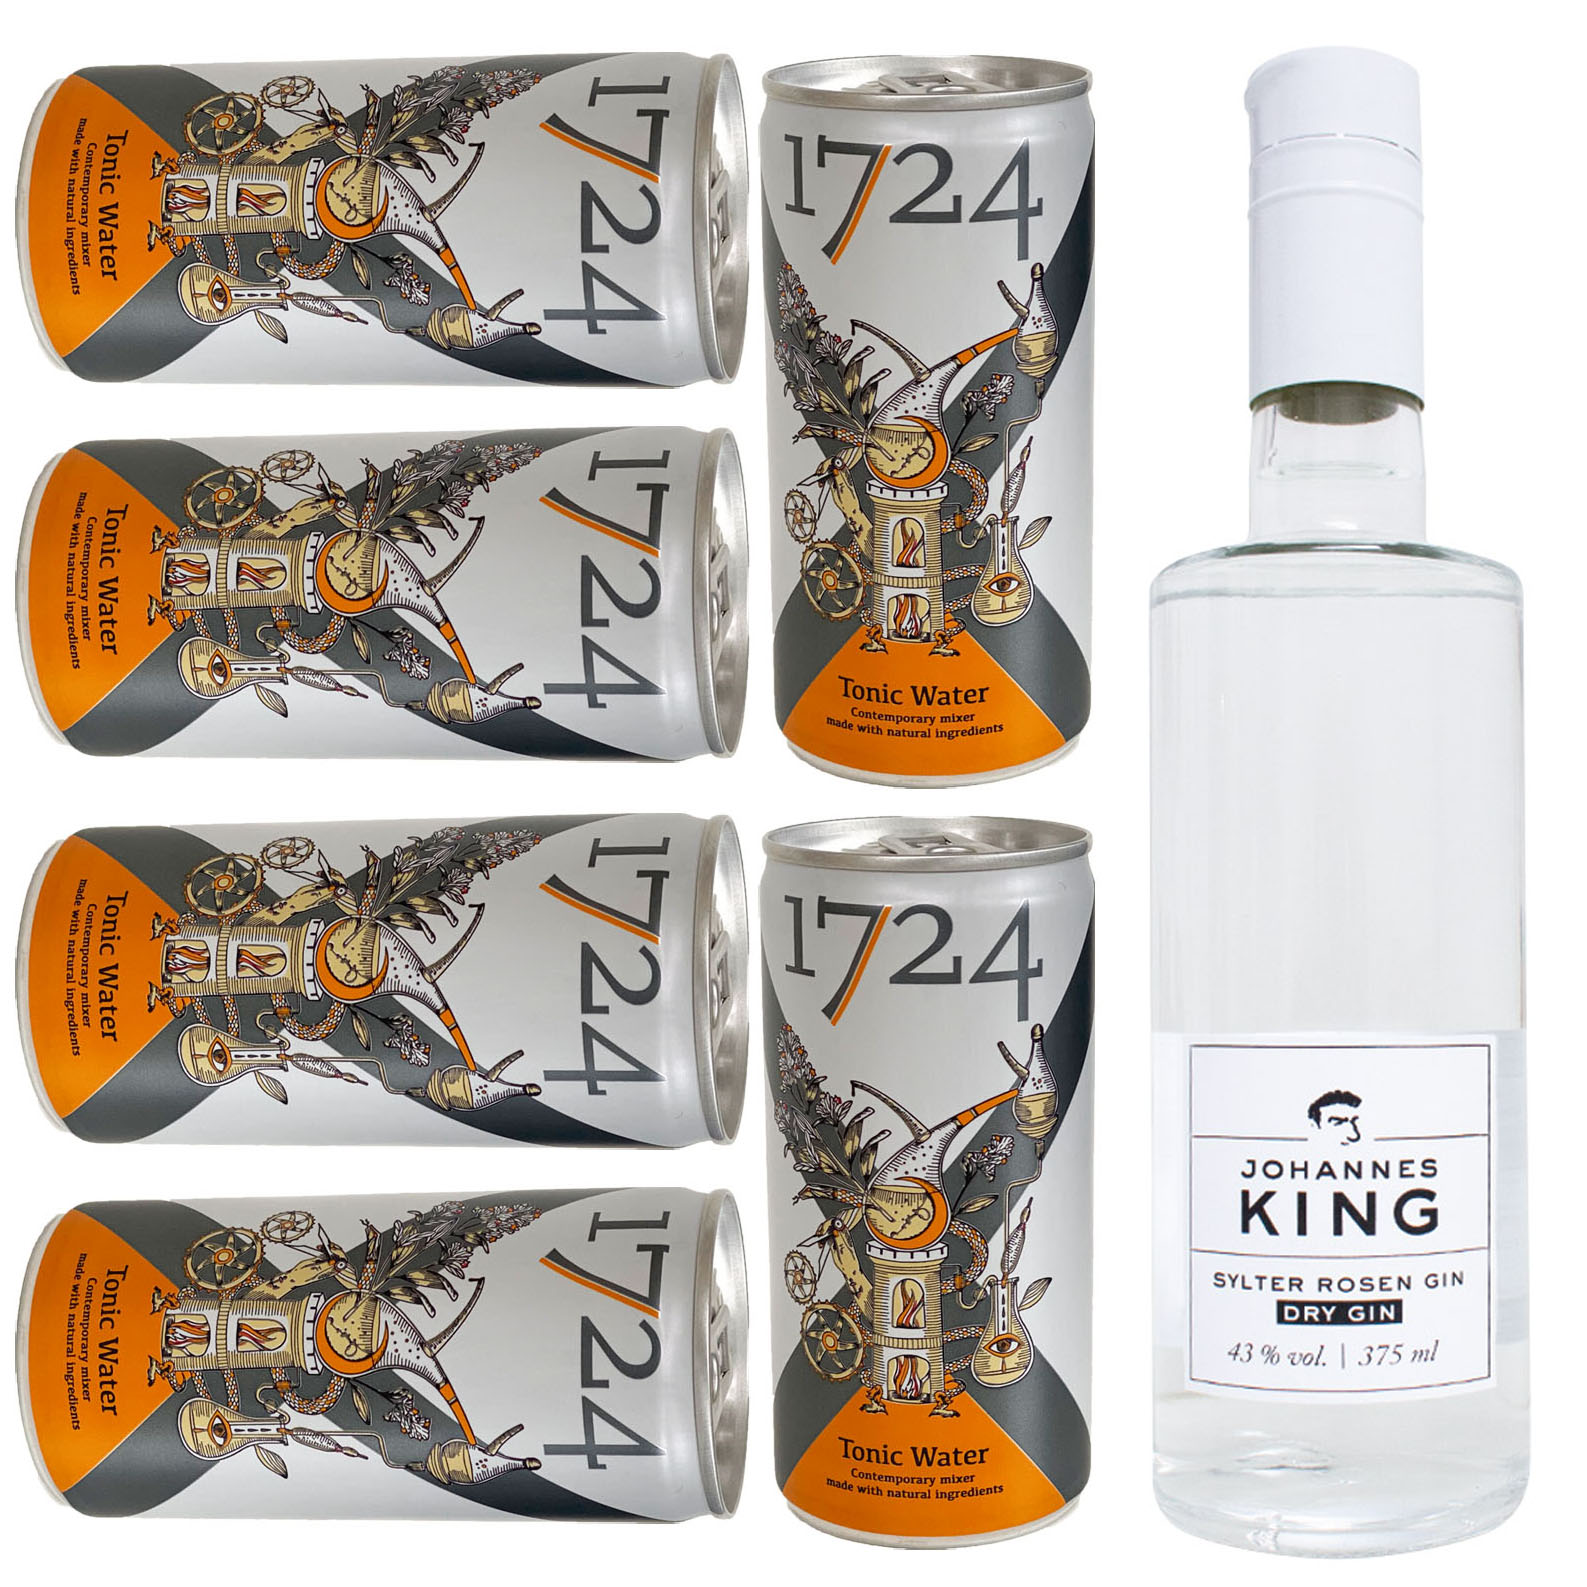 Kings Sylter Rosen Gin & 1724 Tonic Water Set